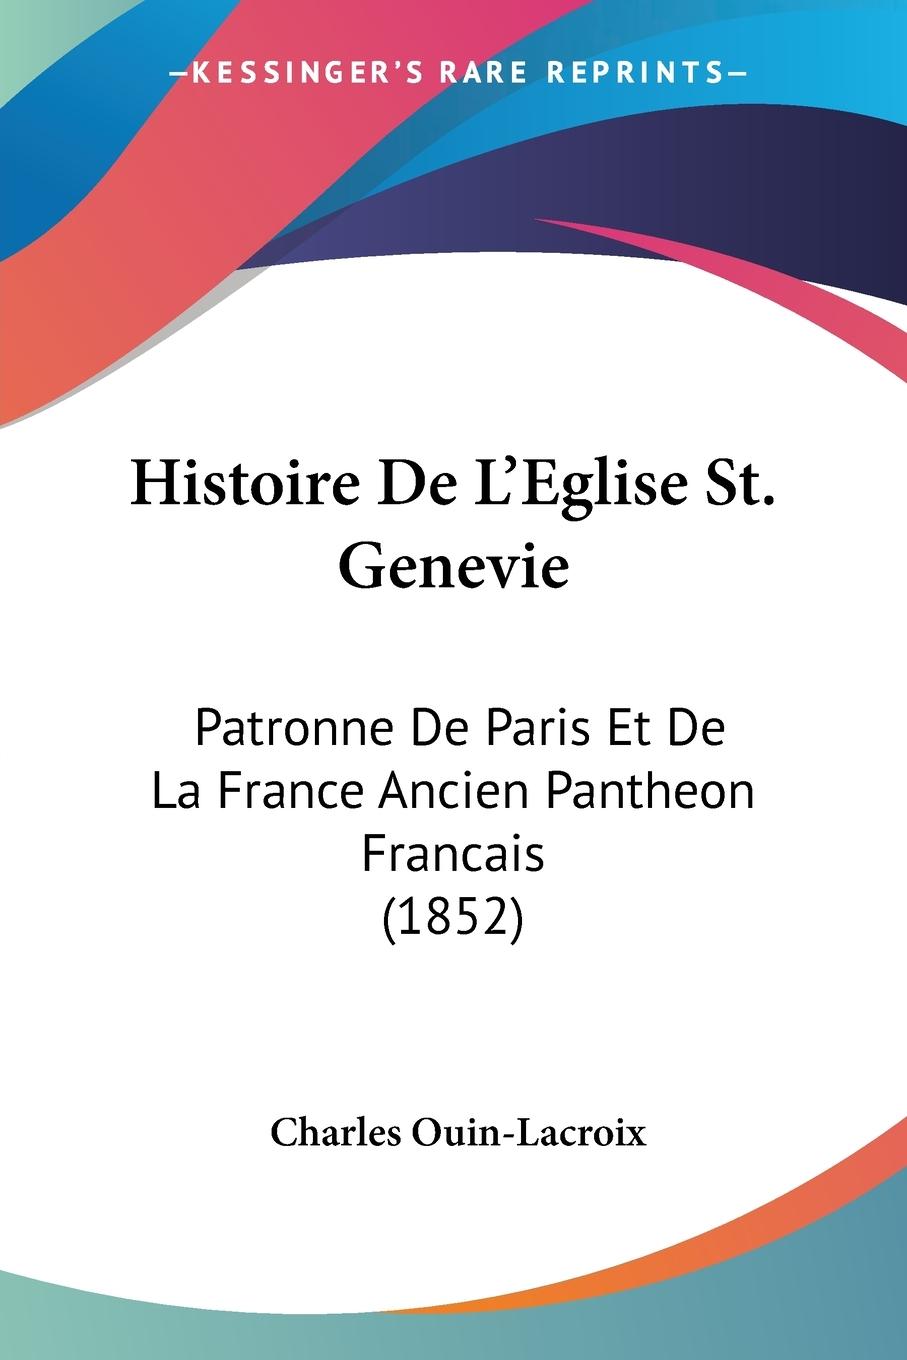 Histoire De L Eglise St. Genevie - Ouin-Lacroix, Charles